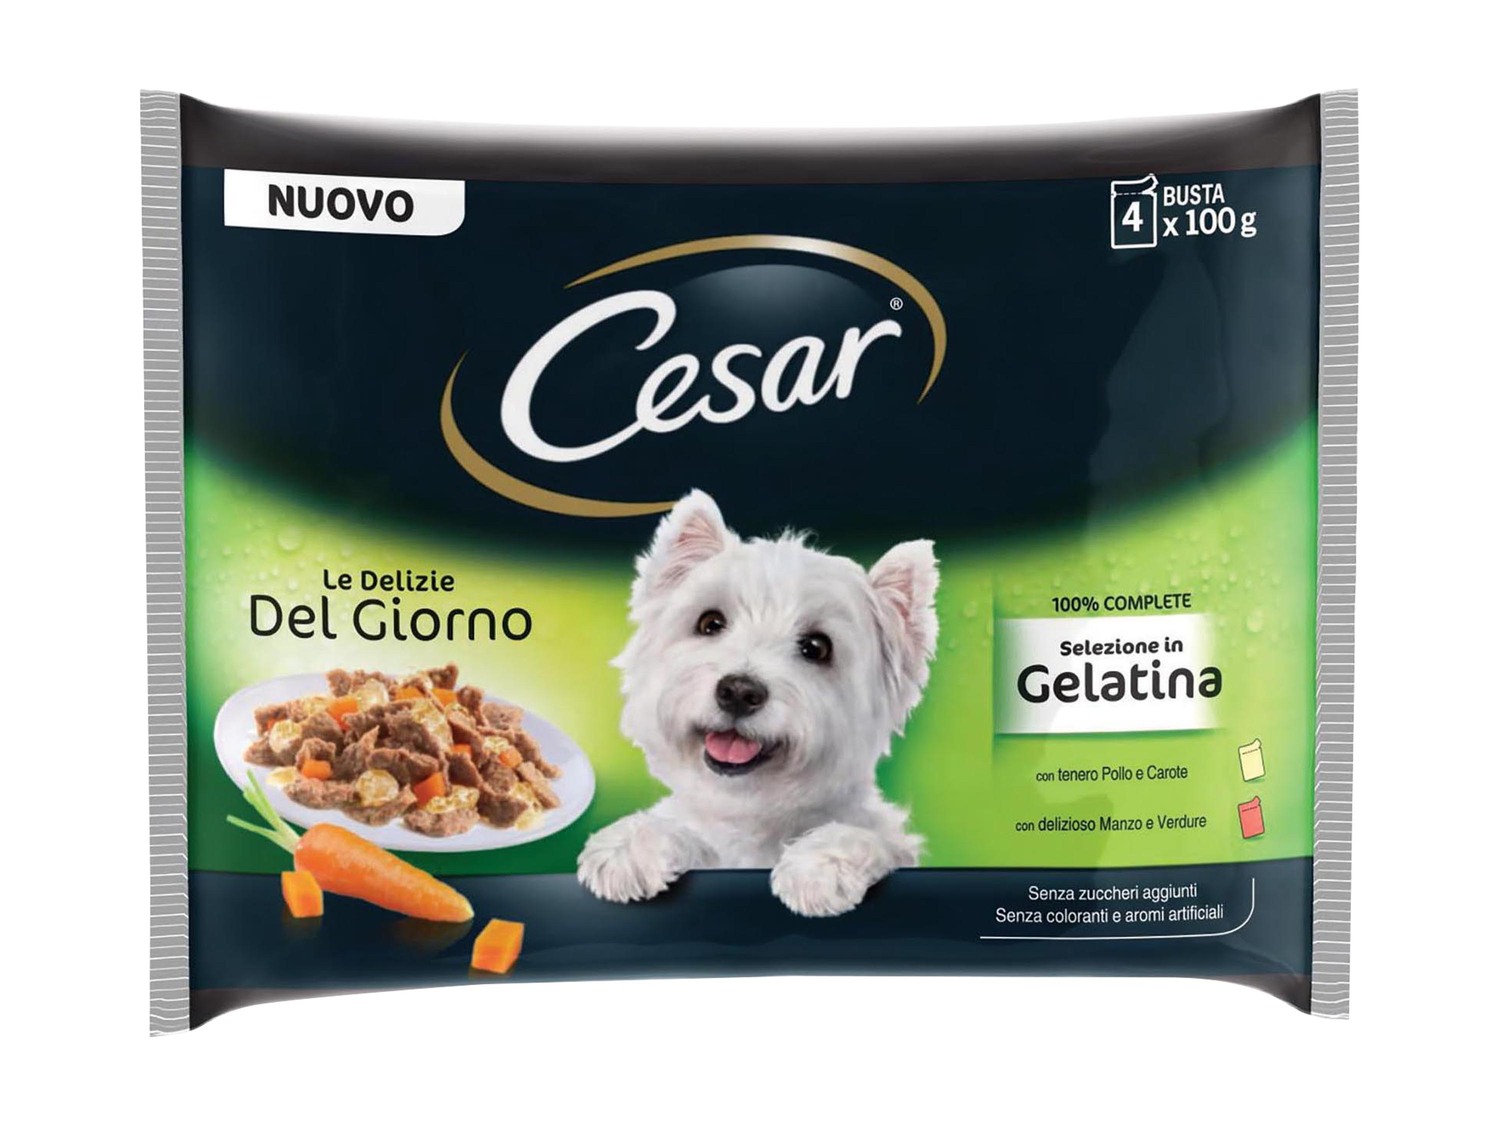 Купить корма для собак щенков. Cesar корм для собак. Паучи Cesar для собак. Желе для собак Cesar.